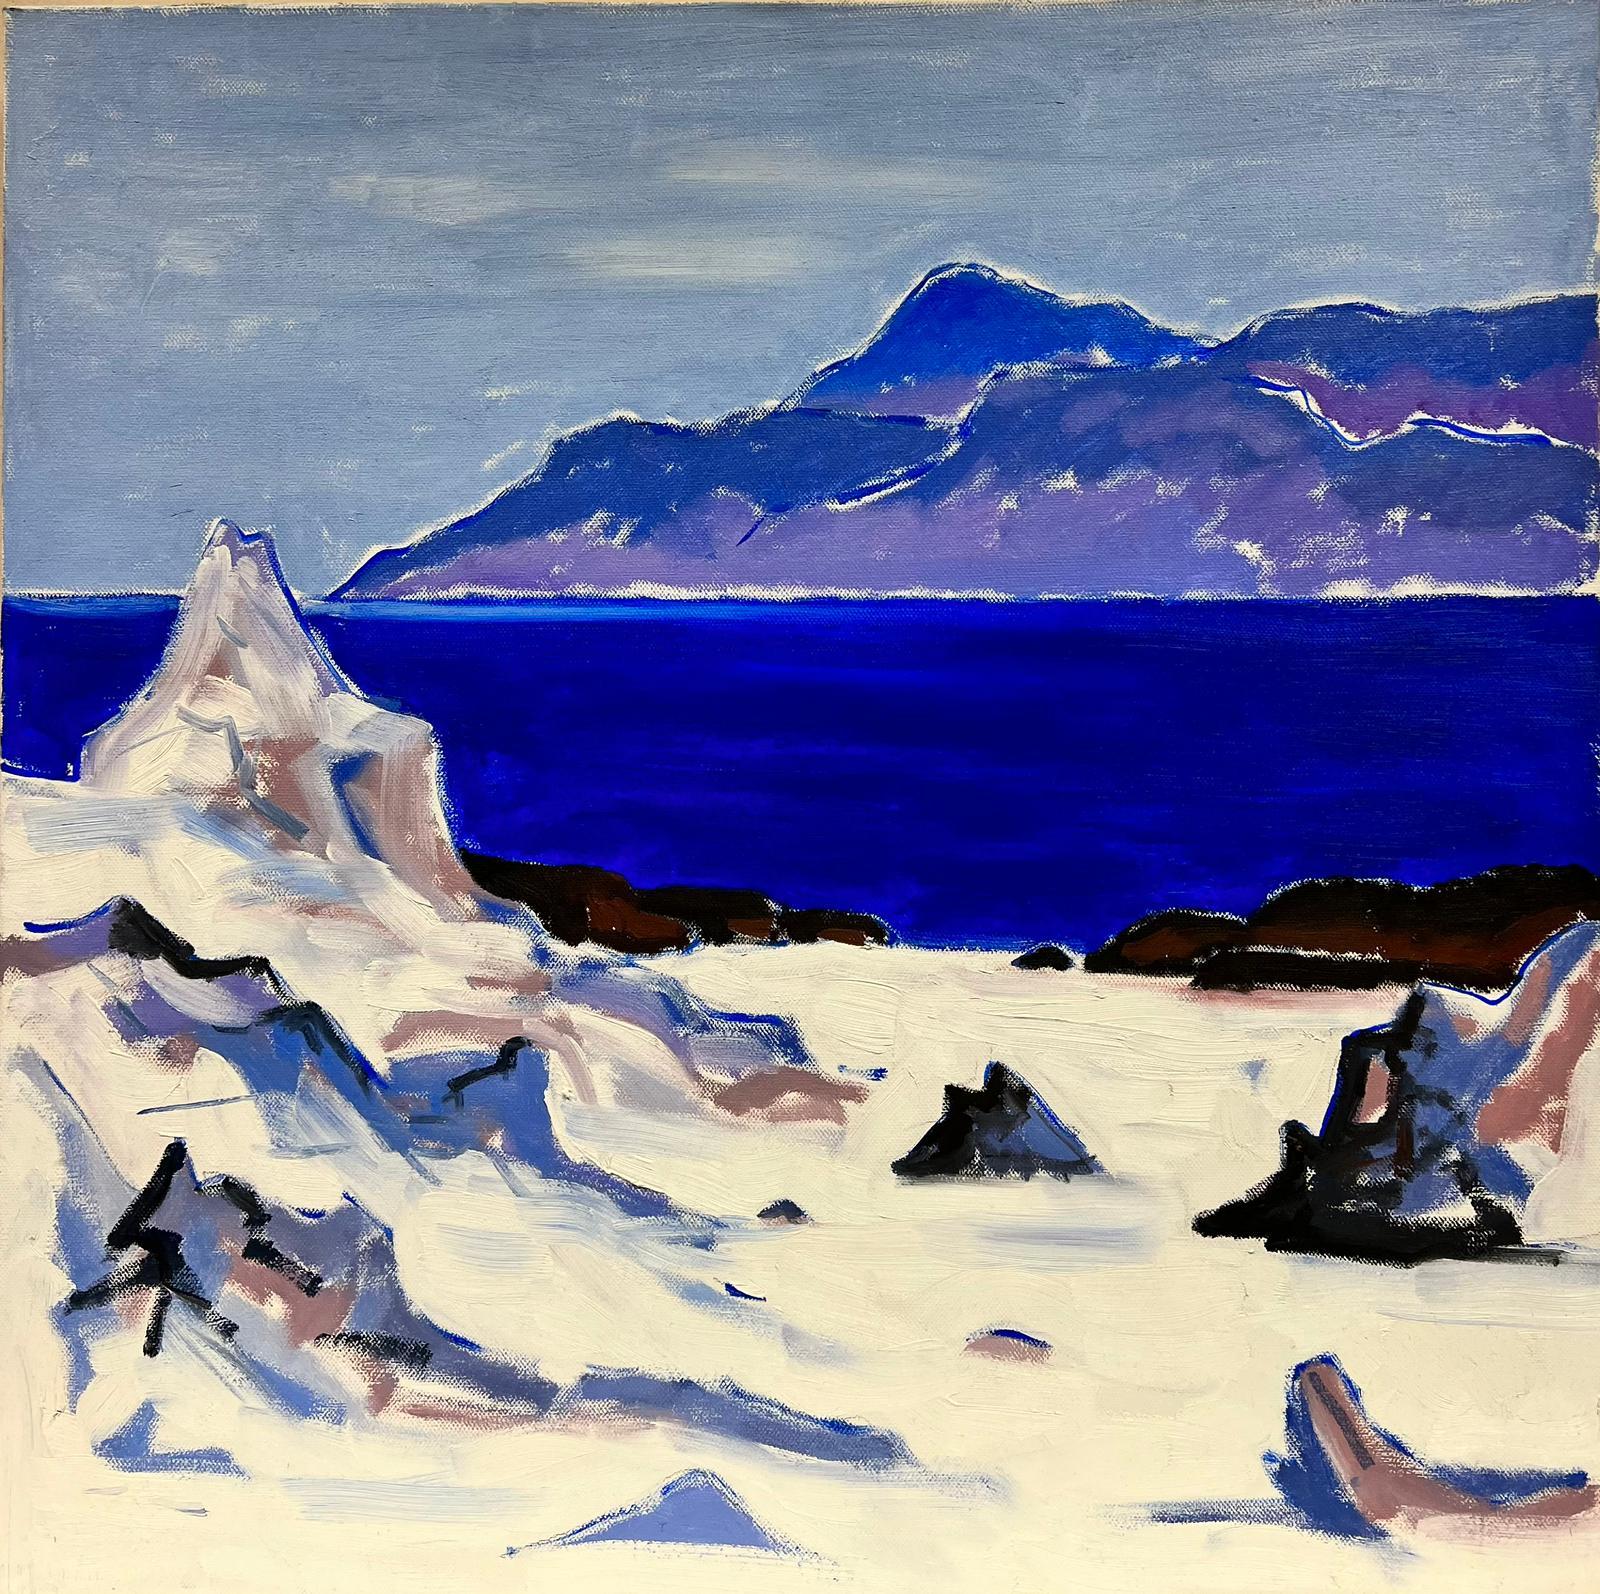 Landscape Painting Scottish School - Peinture à l'huile moderniste écossaise sur toile Iona Blue Seas Purple Highlands